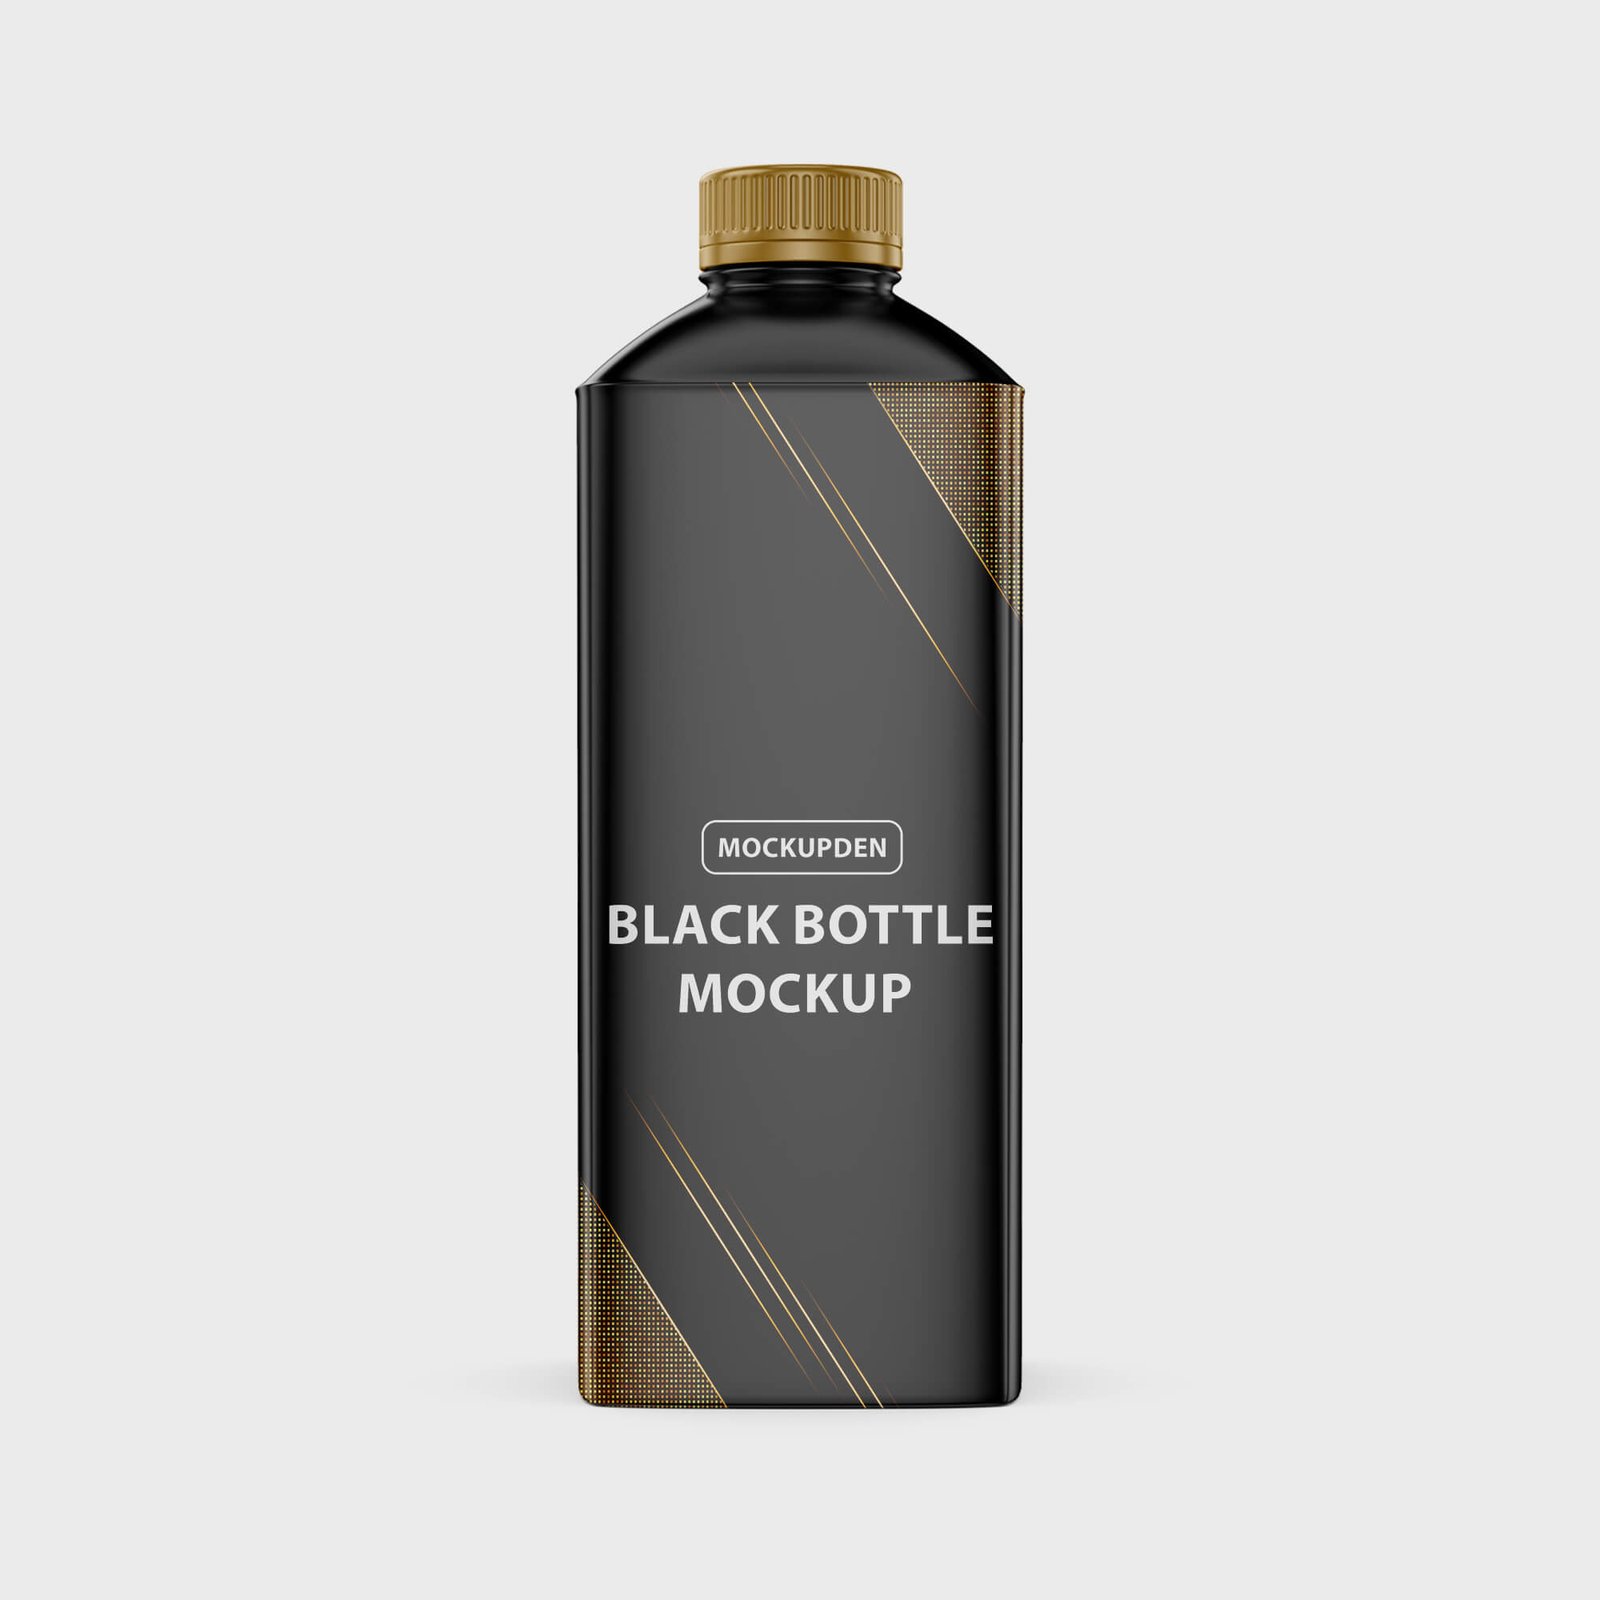 Design Free Black Bottle Mockup PSD Template